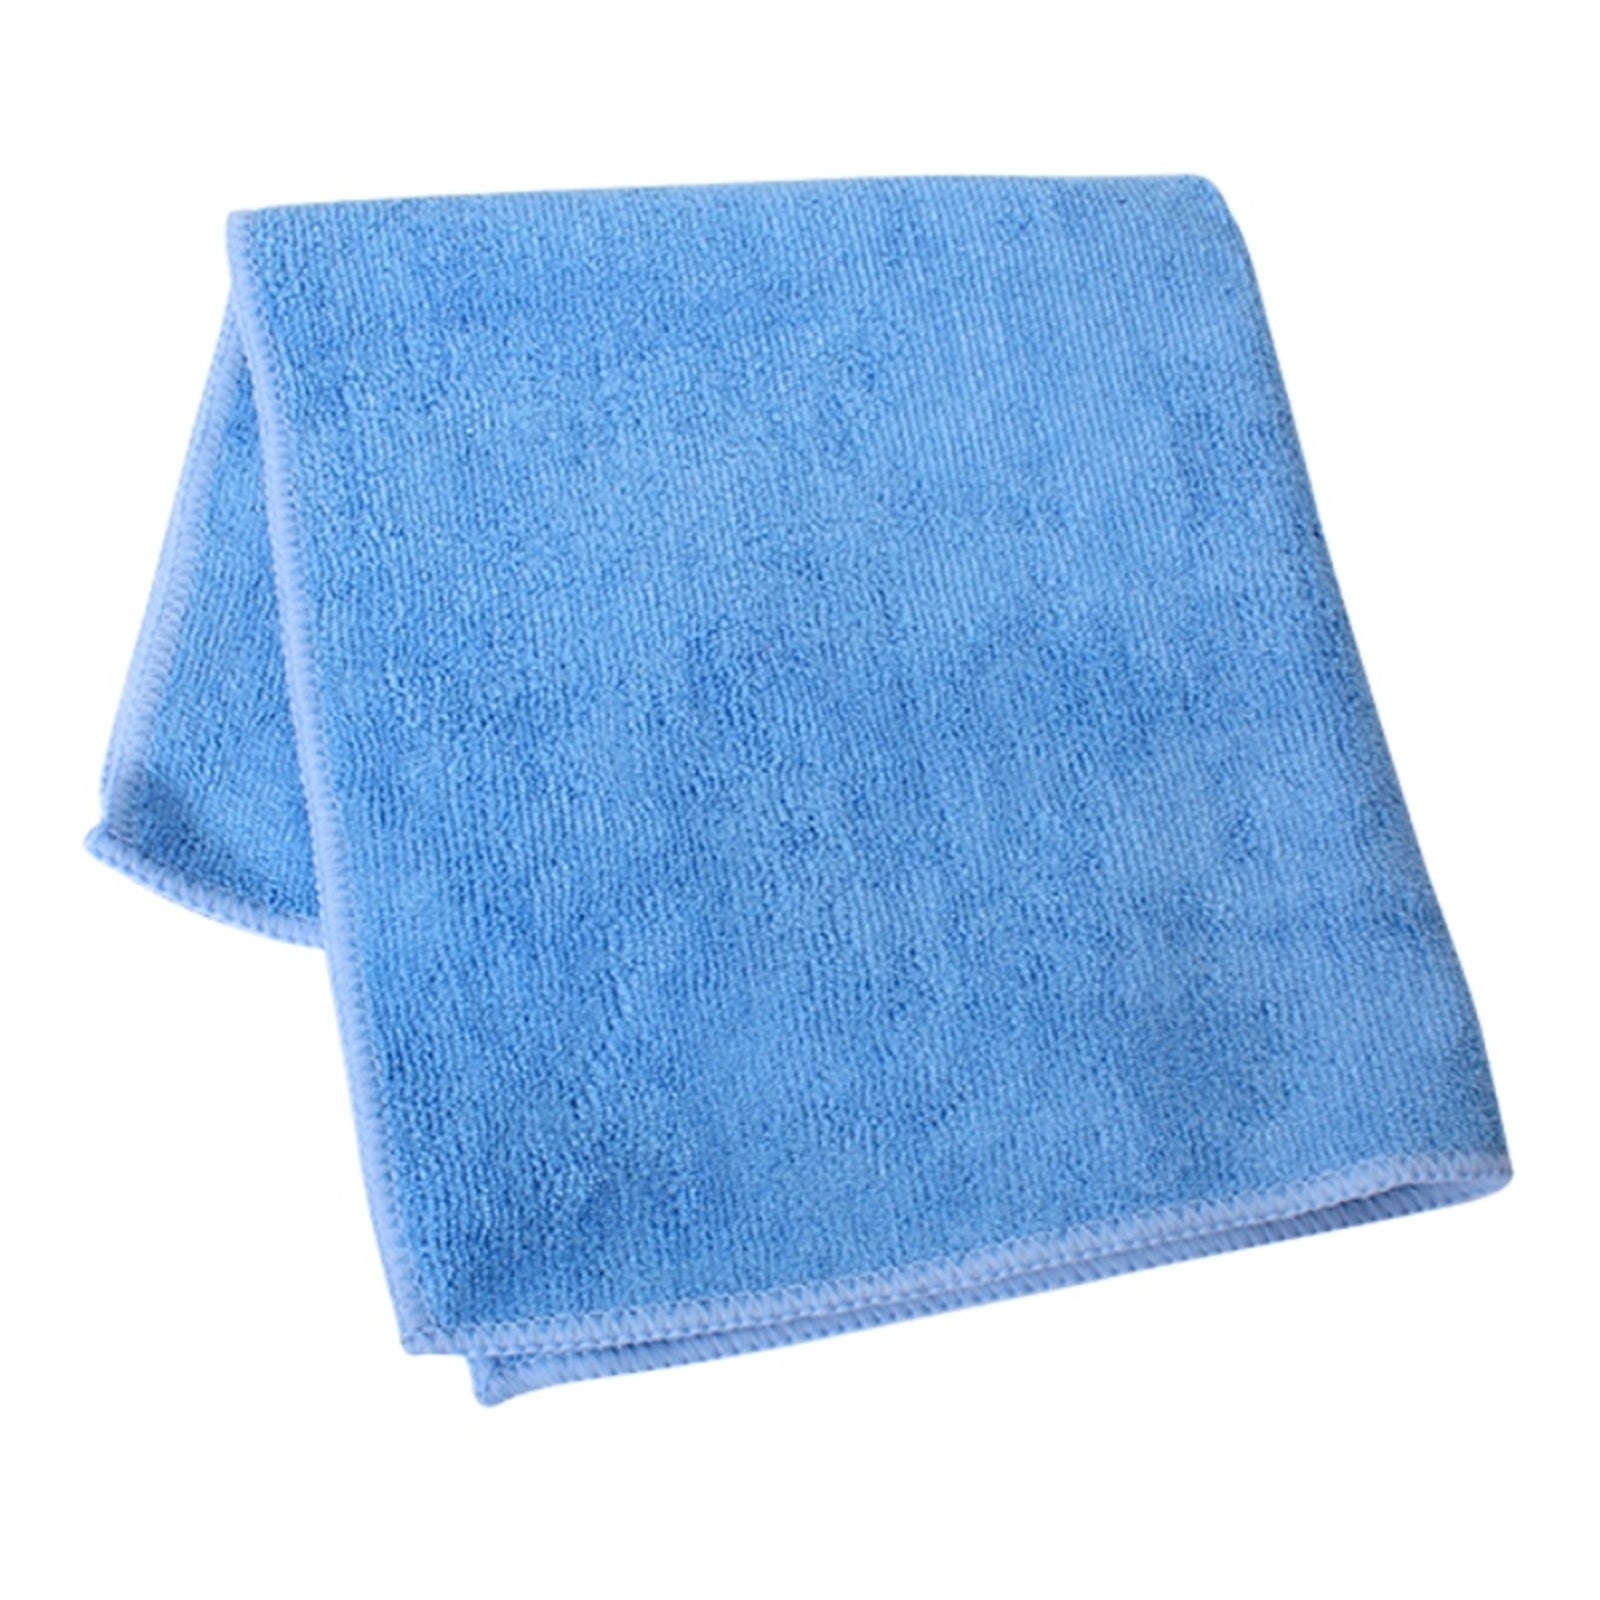 Fibreclean General Microfibre Cloth Blue